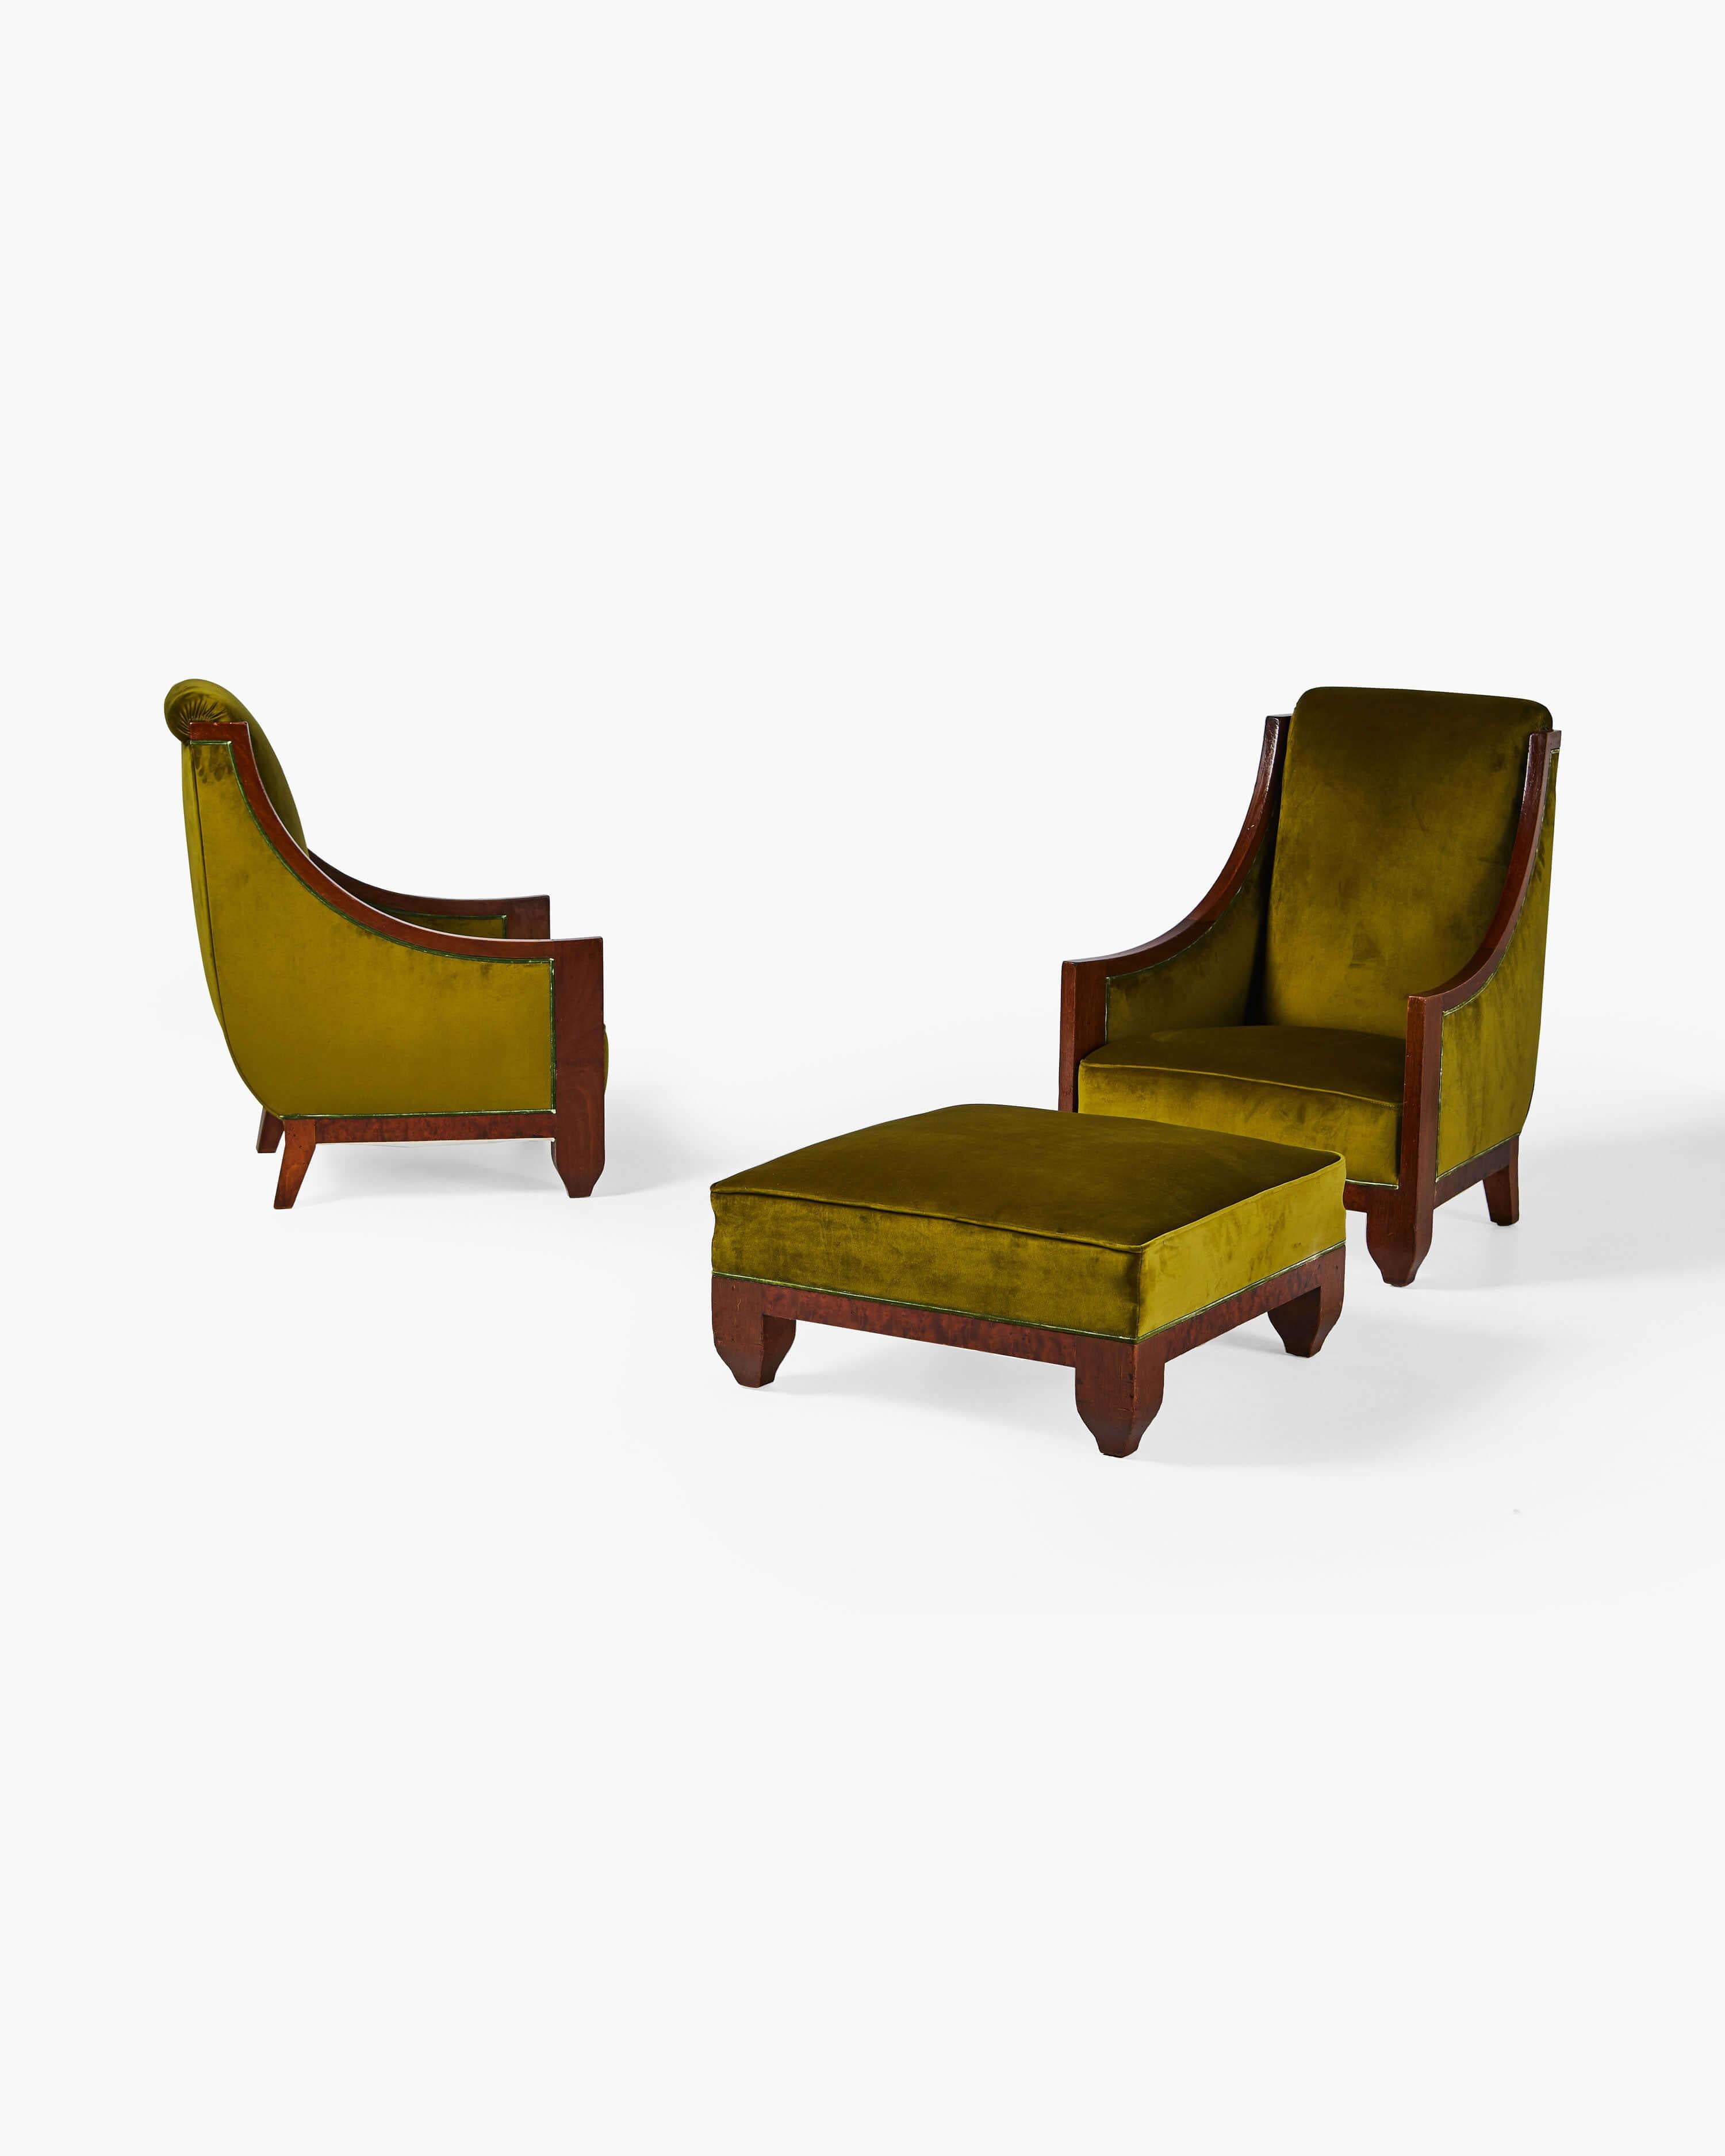 La subtile finesse décorative du designer français André Sornay se retrouve dans cette paire de fauteuils et d'ottomans, en bois de noyer et tapissés d'un velours chartreuse distinctif. Les meubles de Sornay associent l'utilisation traditionnelle de